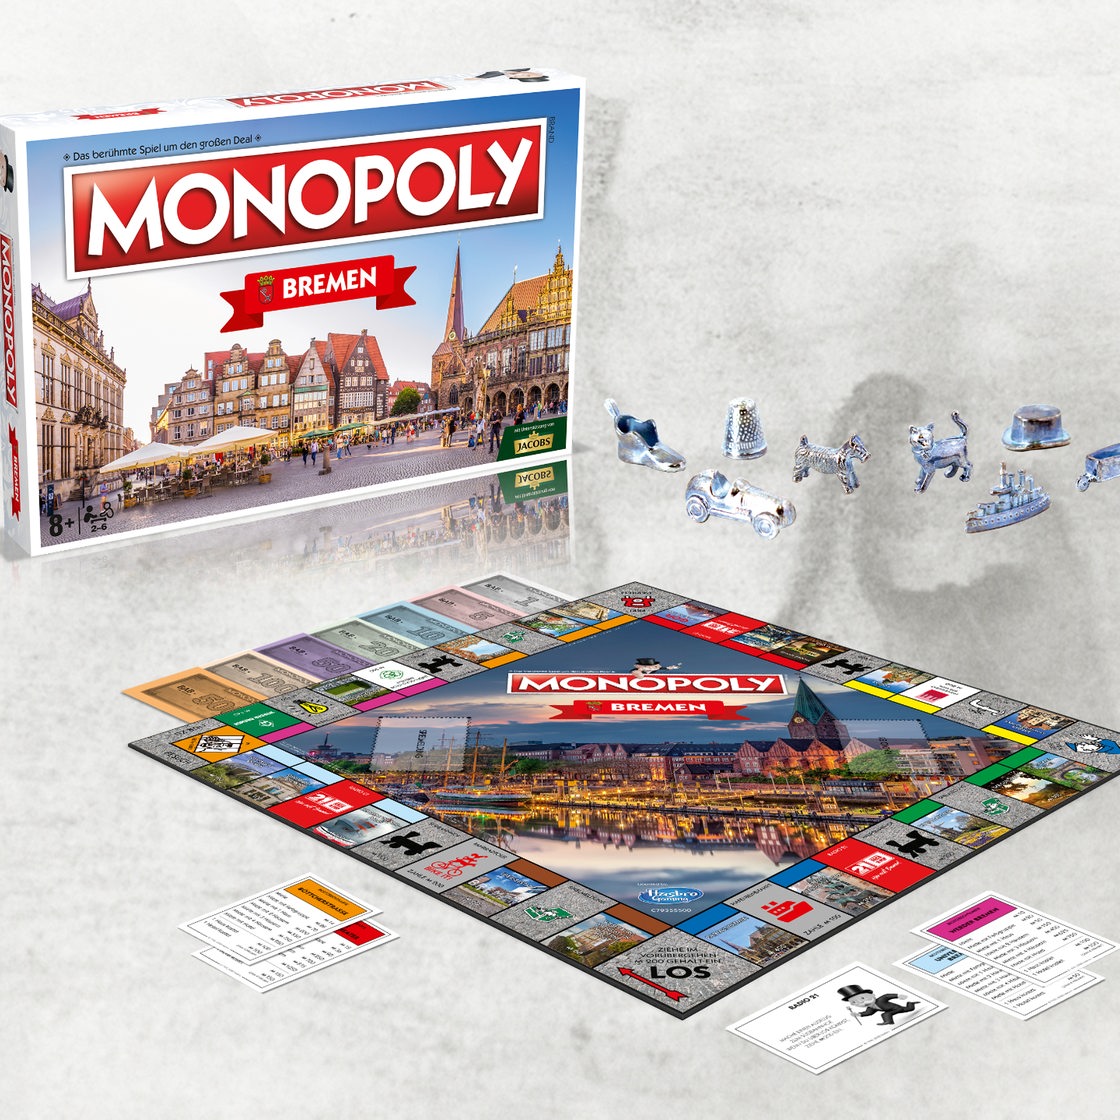 Monopoly Bremen